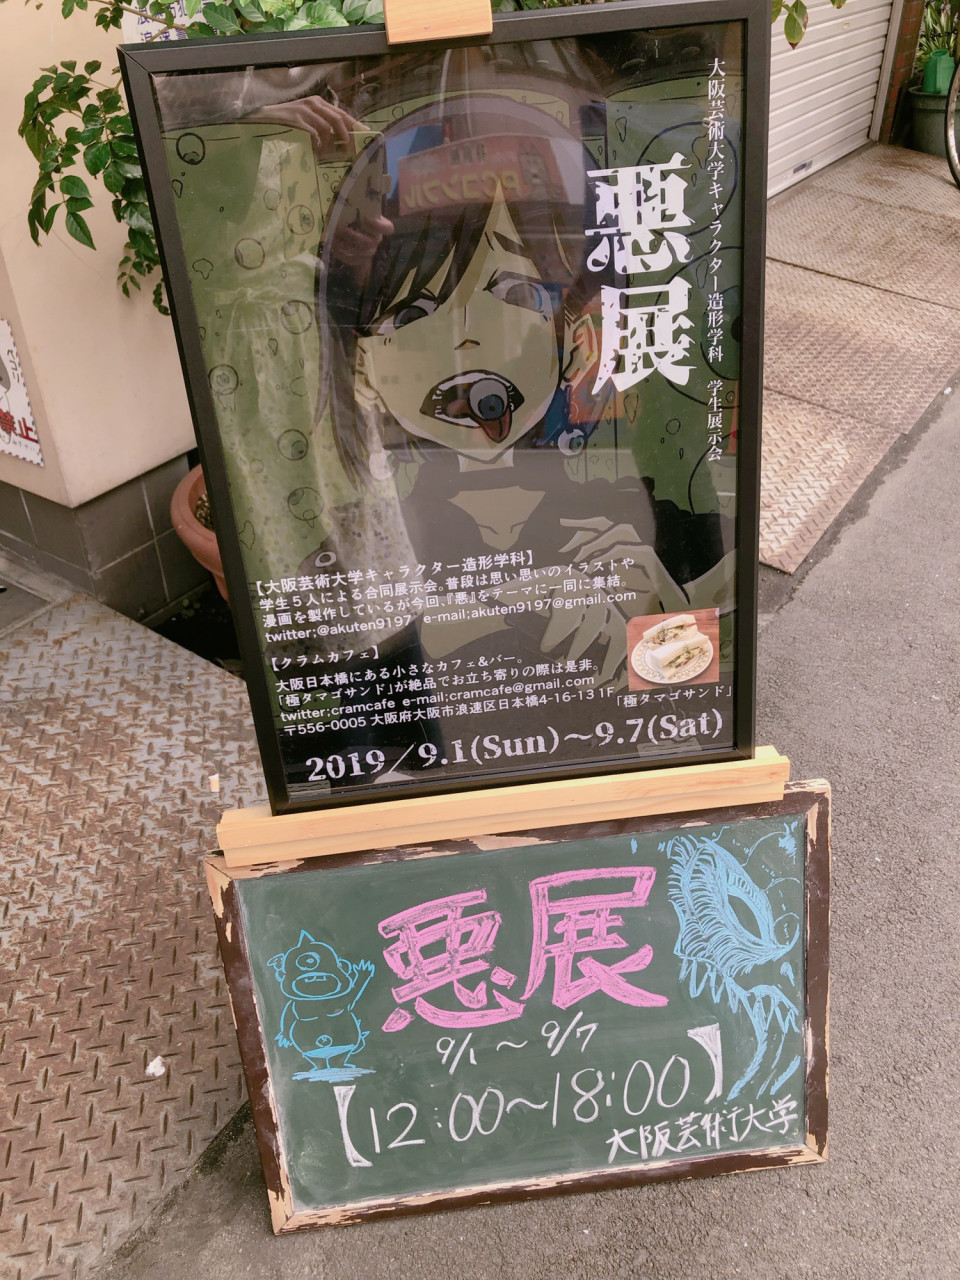 本日より大阪芸術大学キャラクター造形学科の学生5人による 悪展 開催 クラムカフェ